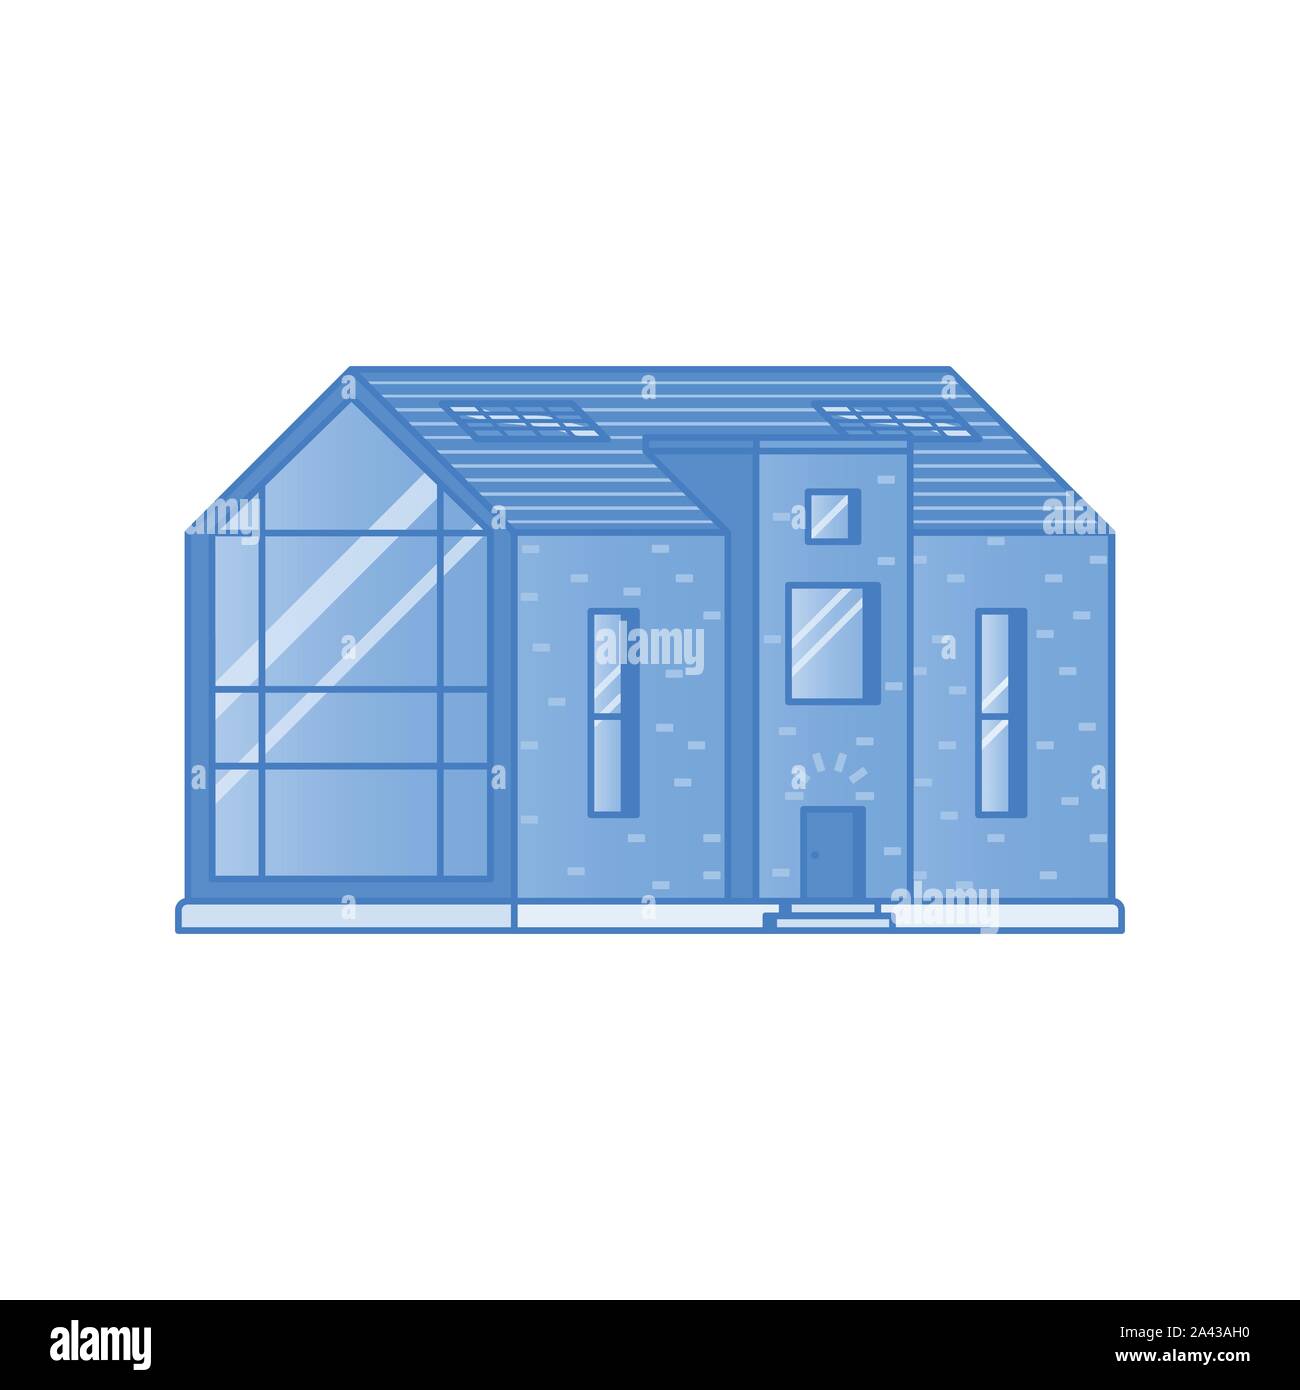 Maison moderne avec une grande fenêtre panoramique peint dans des tons de bleu sur fond blanc dessiné dans un style plat Illustration de Vecteur